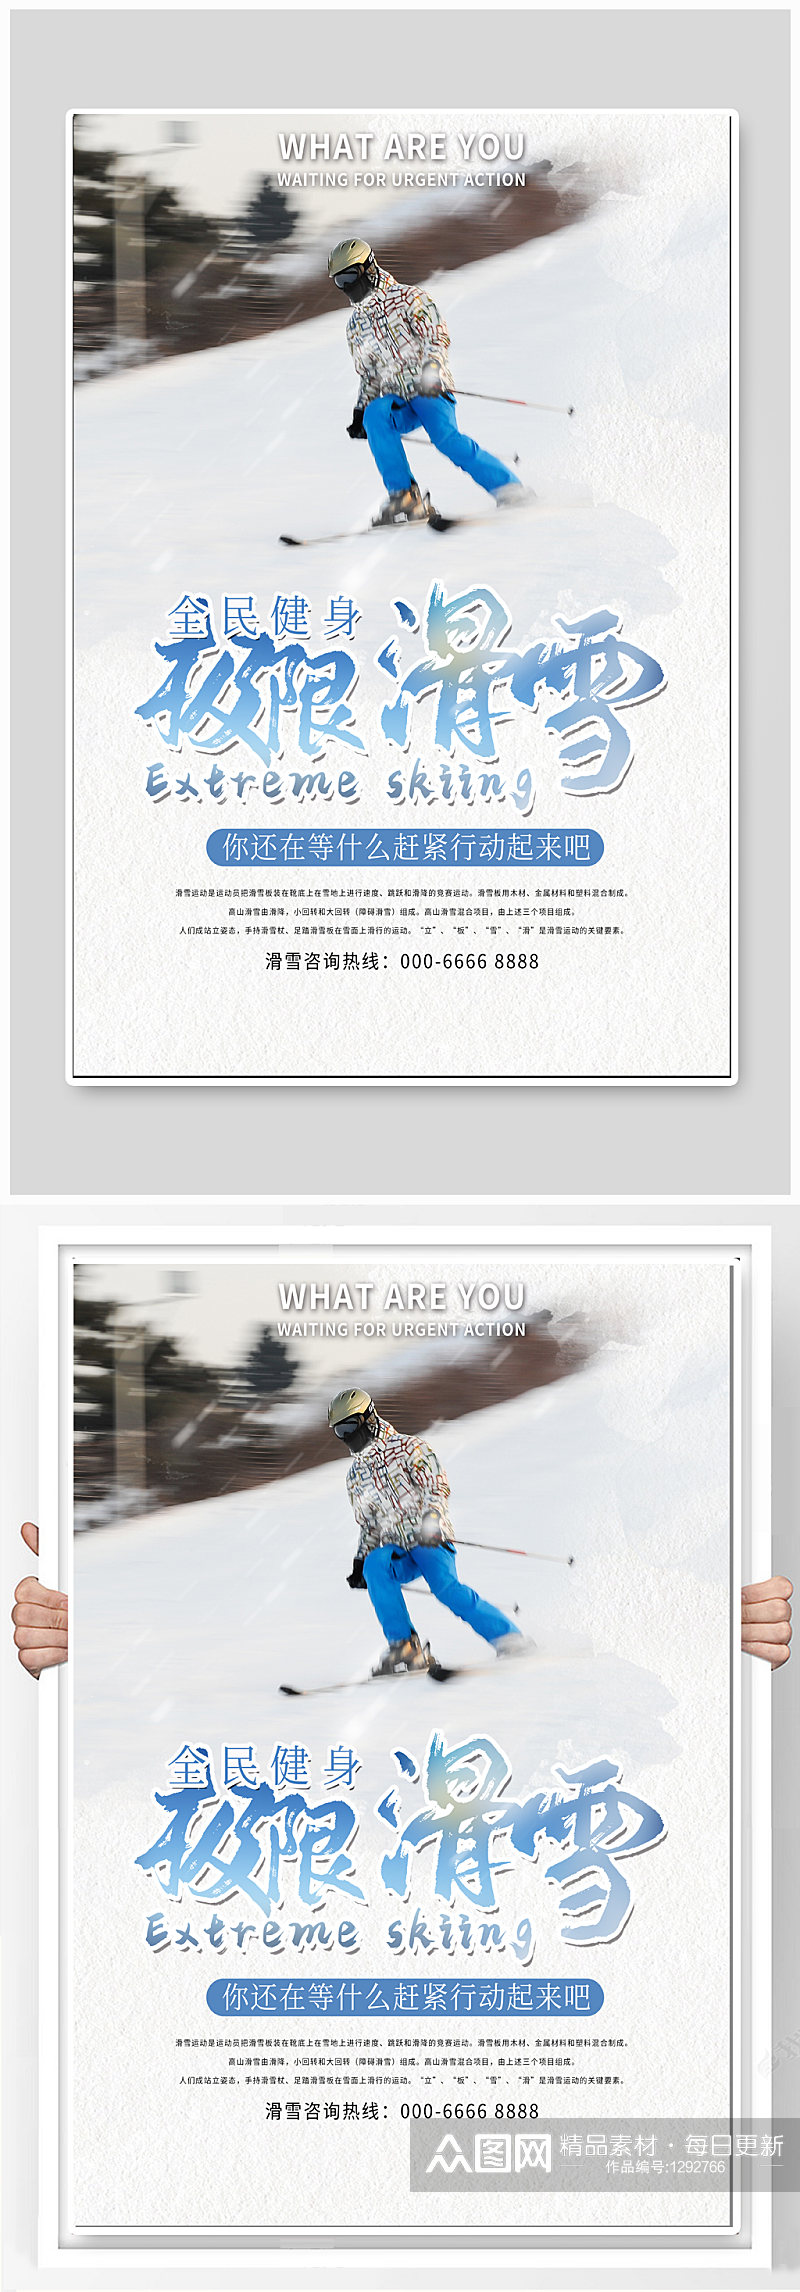 极限滑雪体育运动海报素材